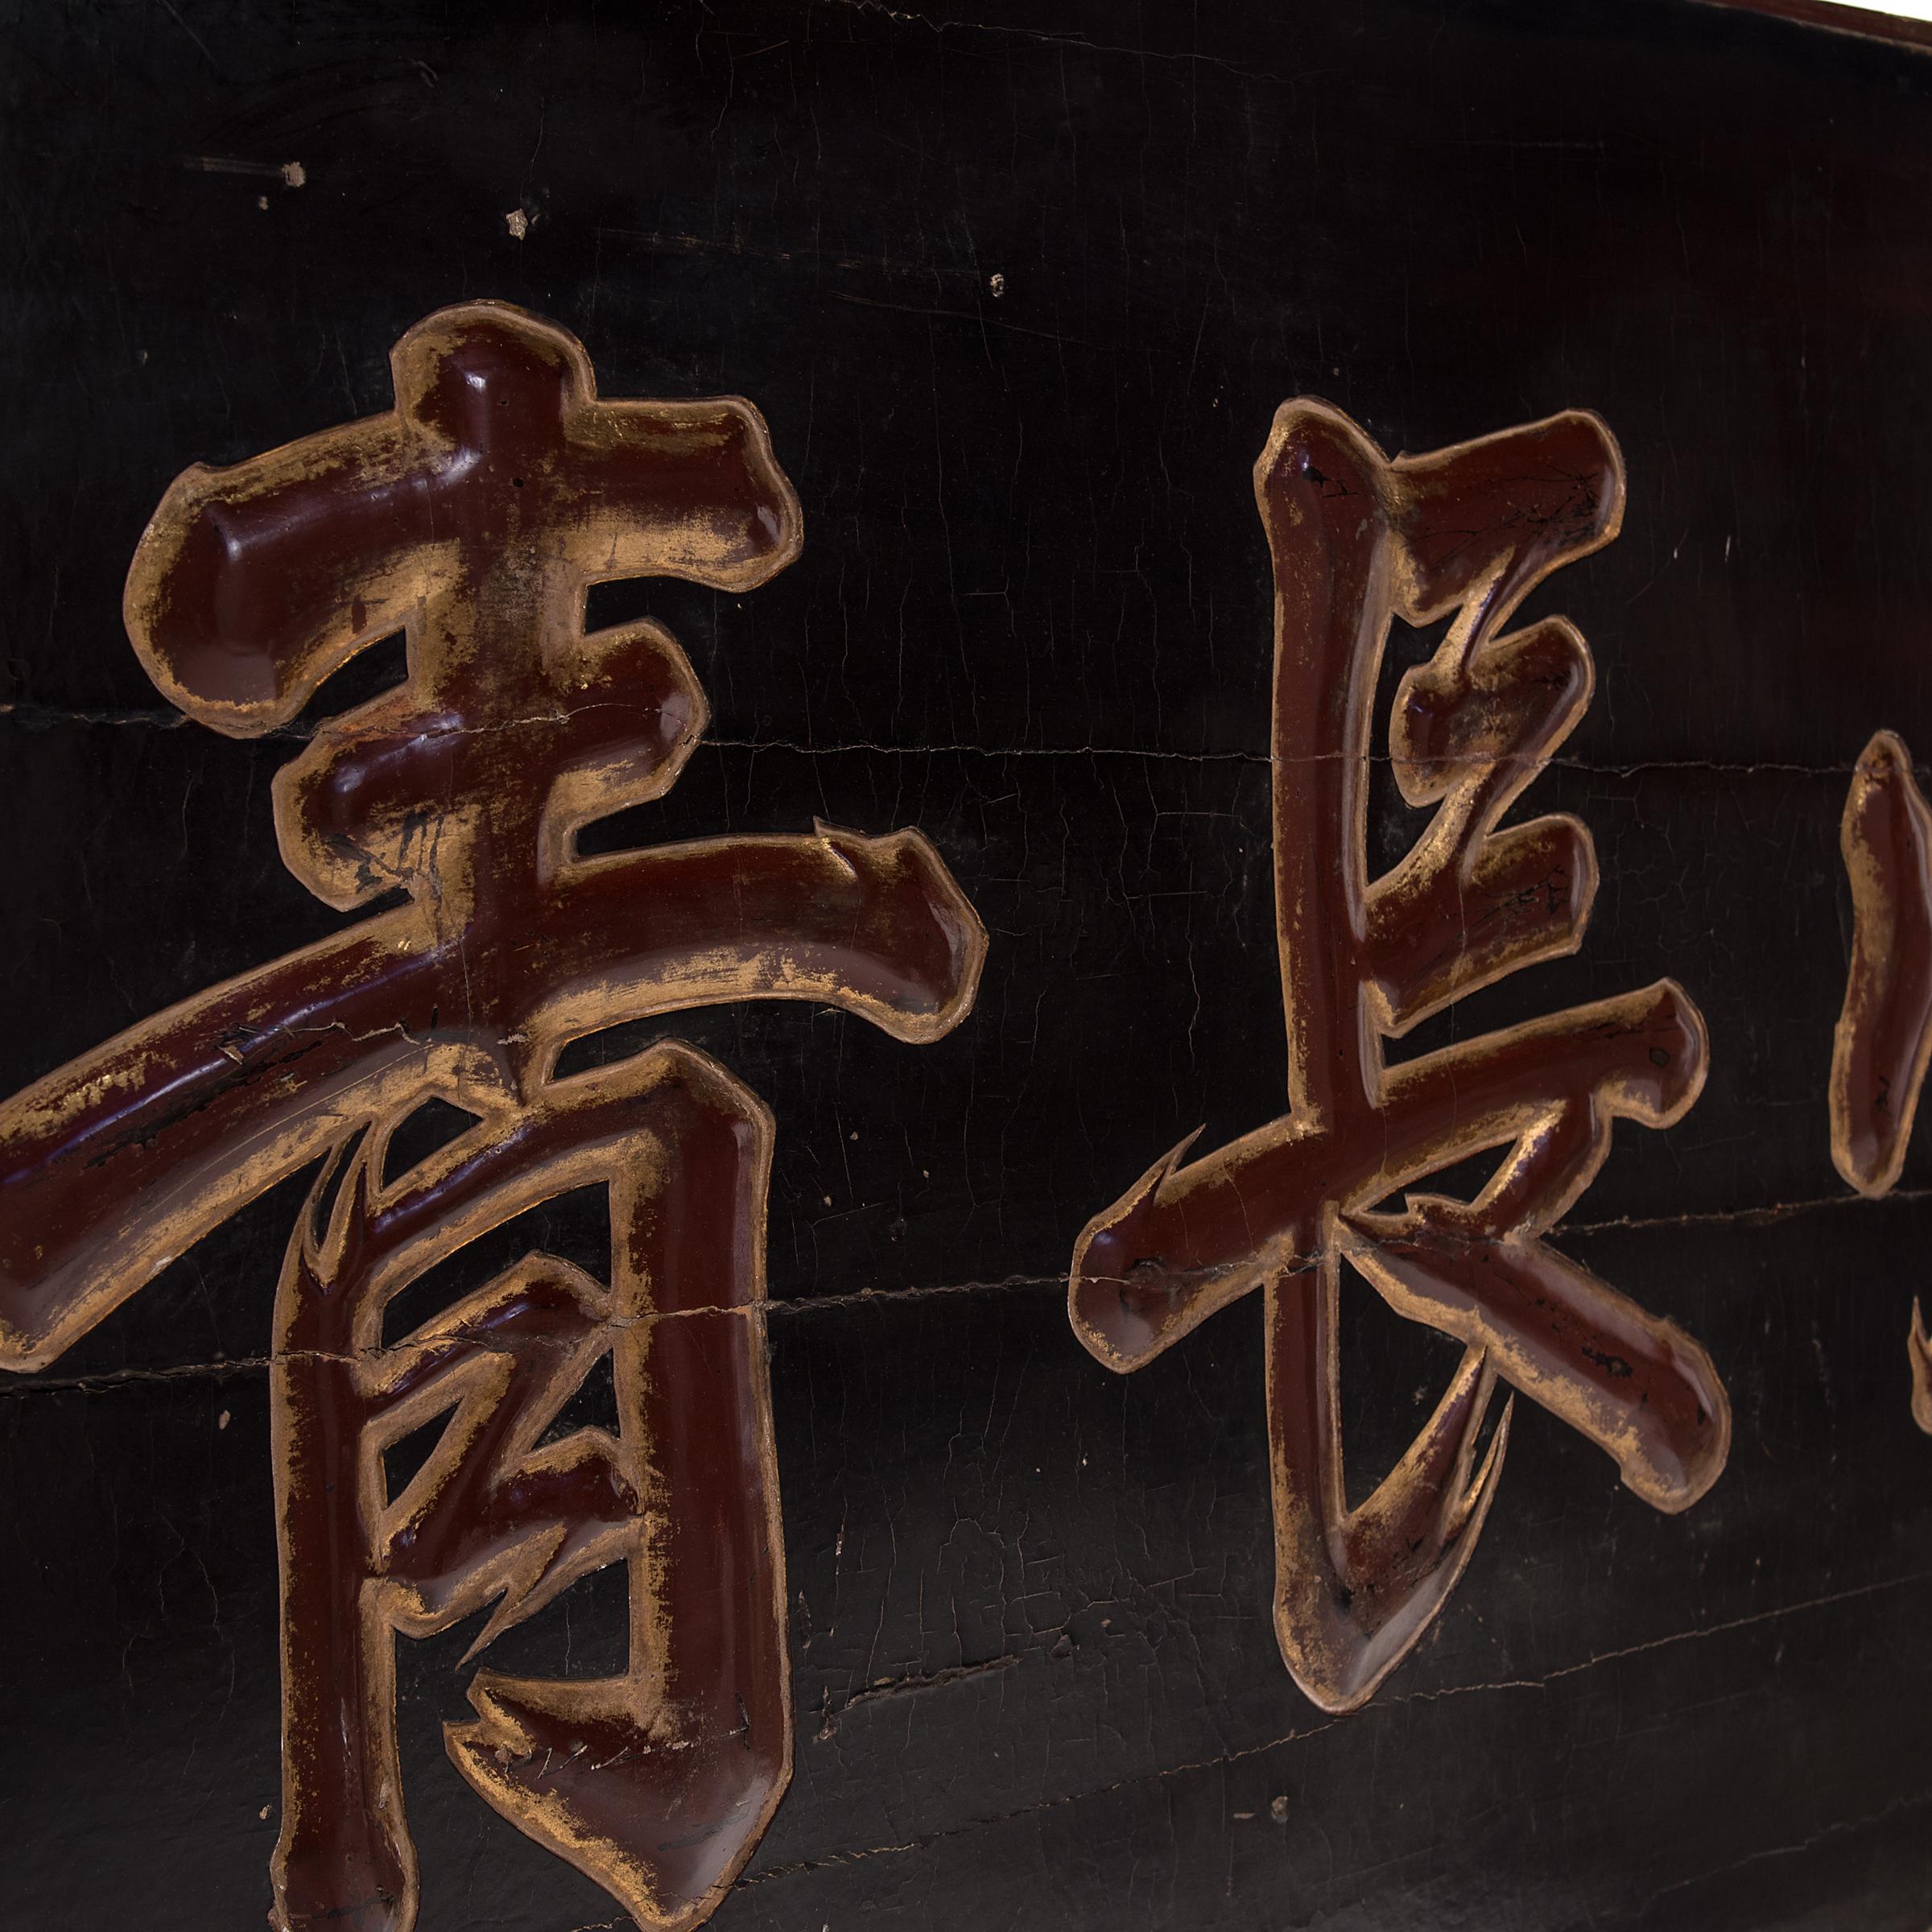 Dieses monumentale, lackierte Ulmenholz-Ehrenzeichen wurde Mitte des 19. Jahrhunderts in Nordchina geschnitzt. Die großen zentralen Zeichen lauten 